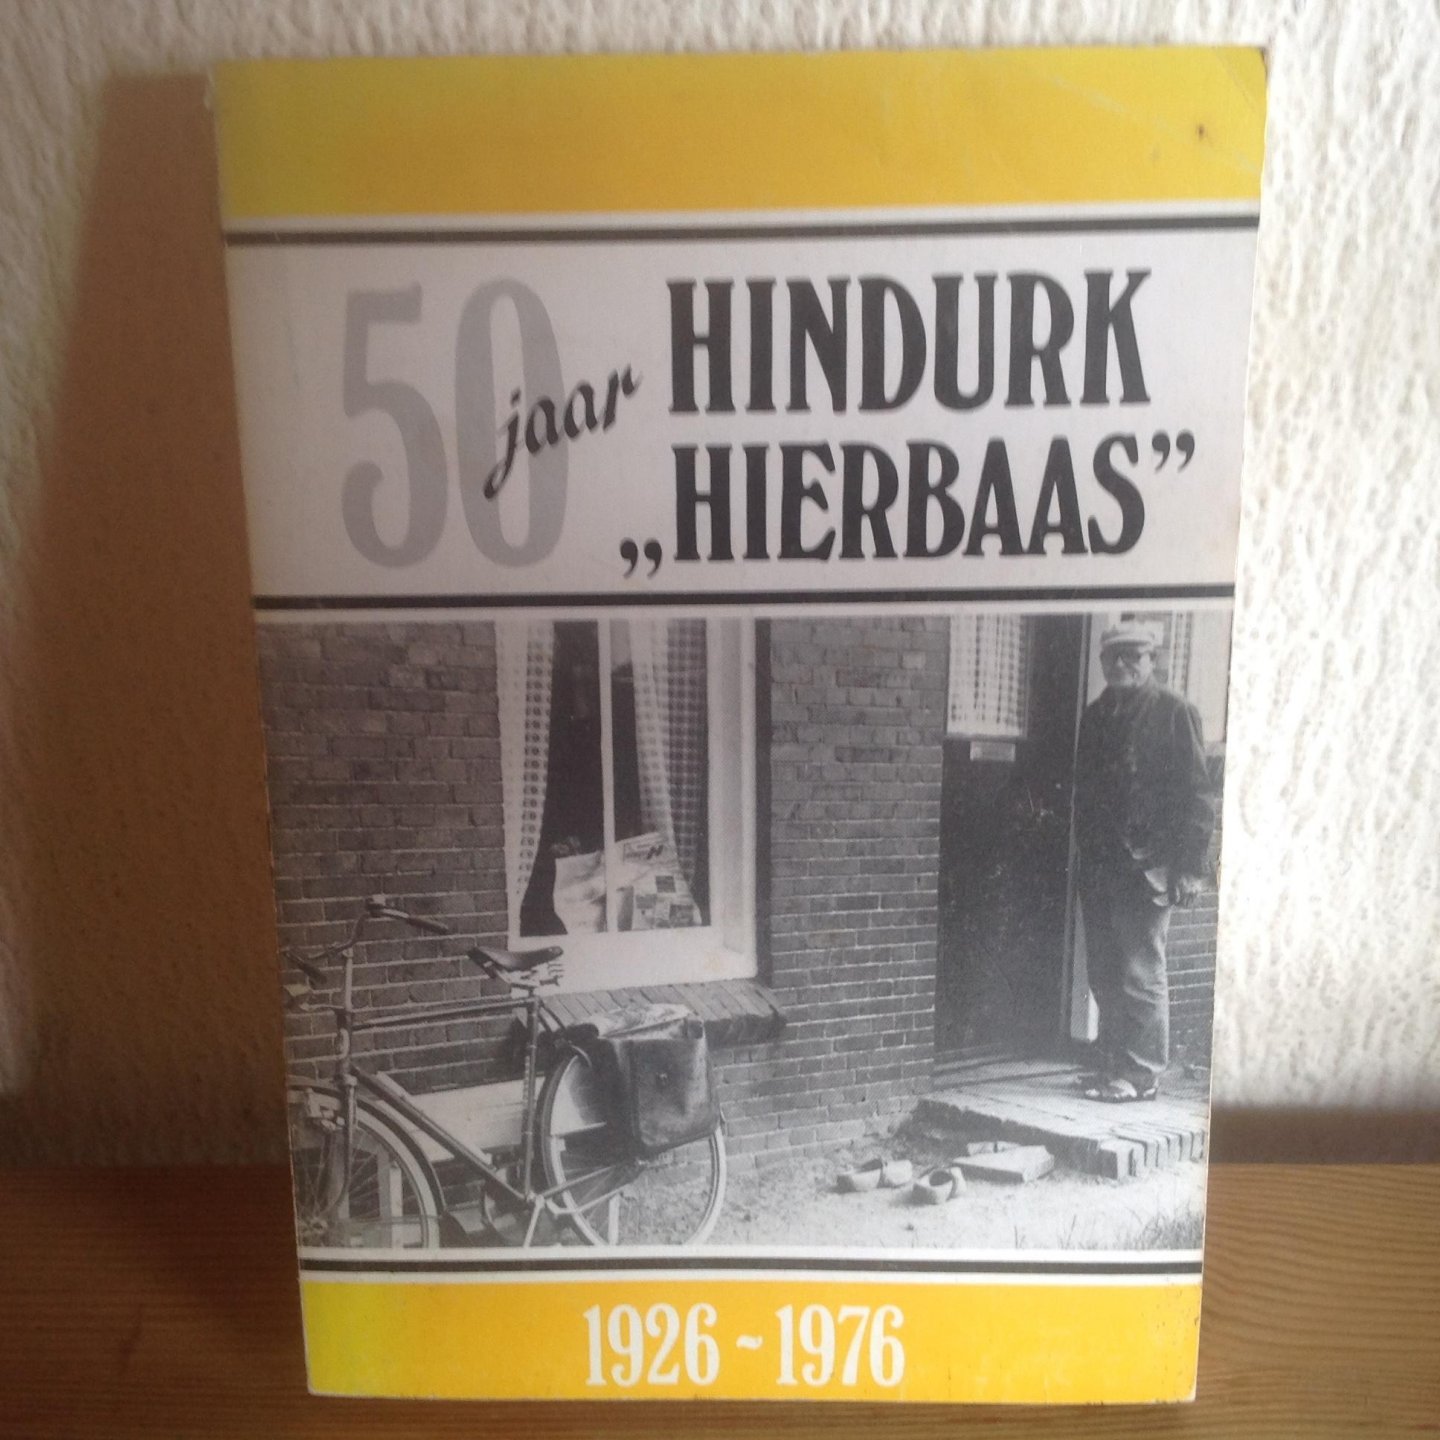 Holvast ,van der Bei - 50 jaar HINDURK HIERBAAS 1926-1976, H W VEENSTRA